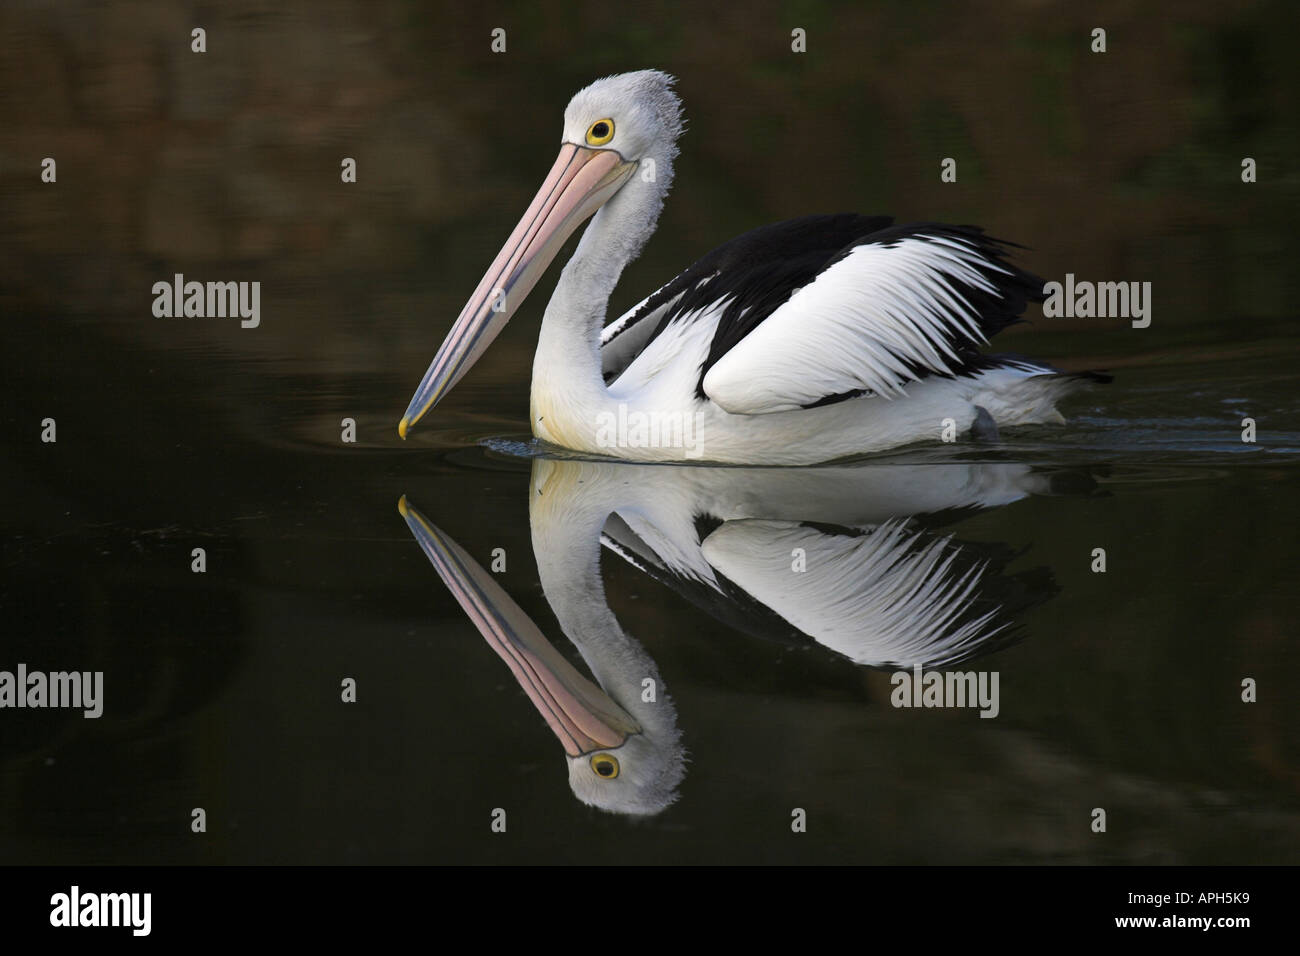 australian pelican, pelecanus conspicillatus Stock Photo